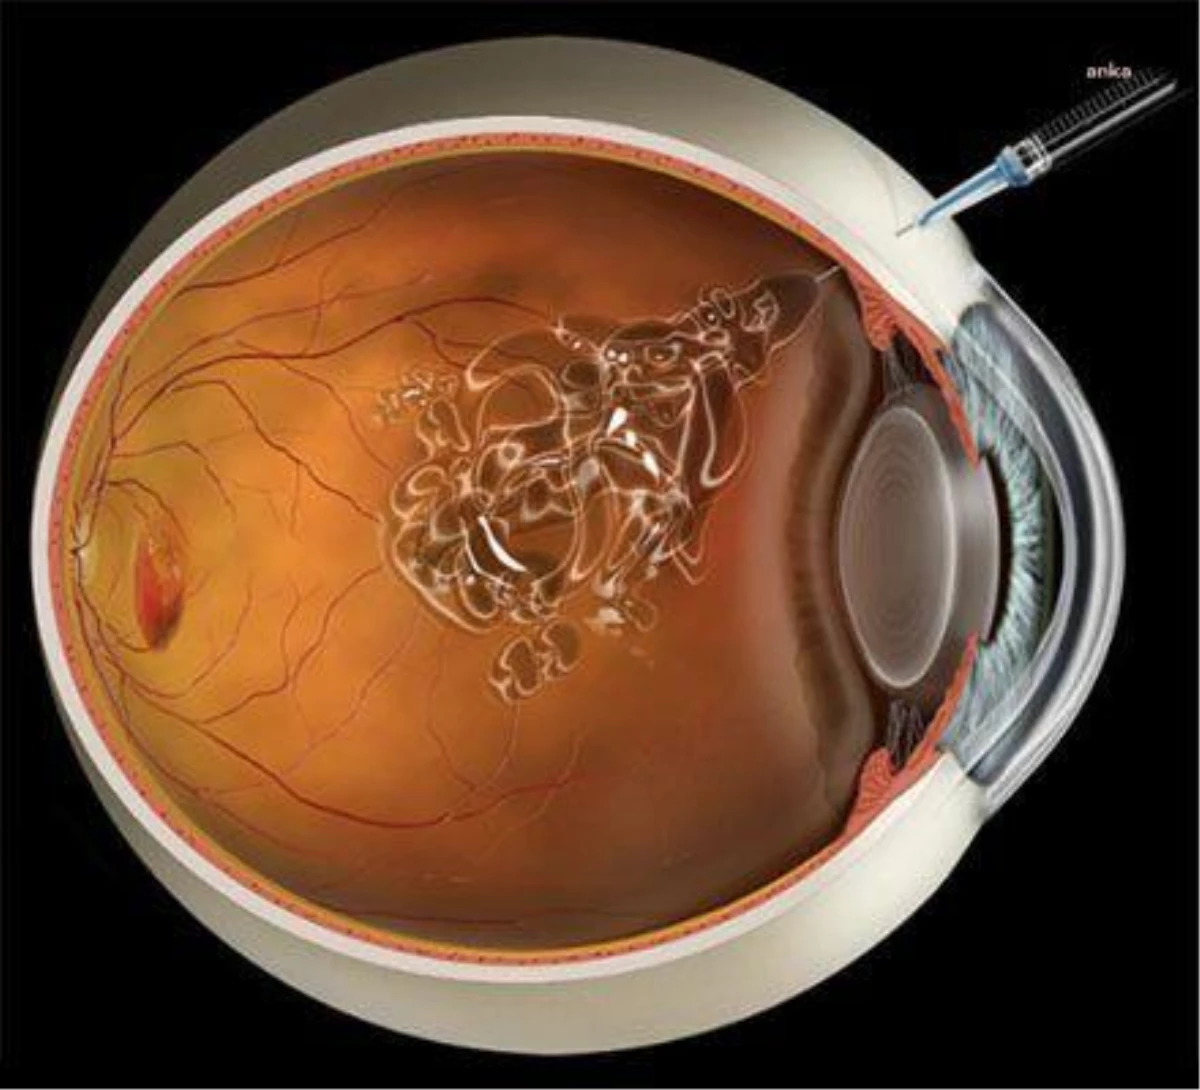 Göz Hastalıkları Uzmanı Prof. Dr. Nur Acar Göçgil: Geç Kalınan Her Süre Kalıcı Hasar Oluşma Riskini Artırıyor